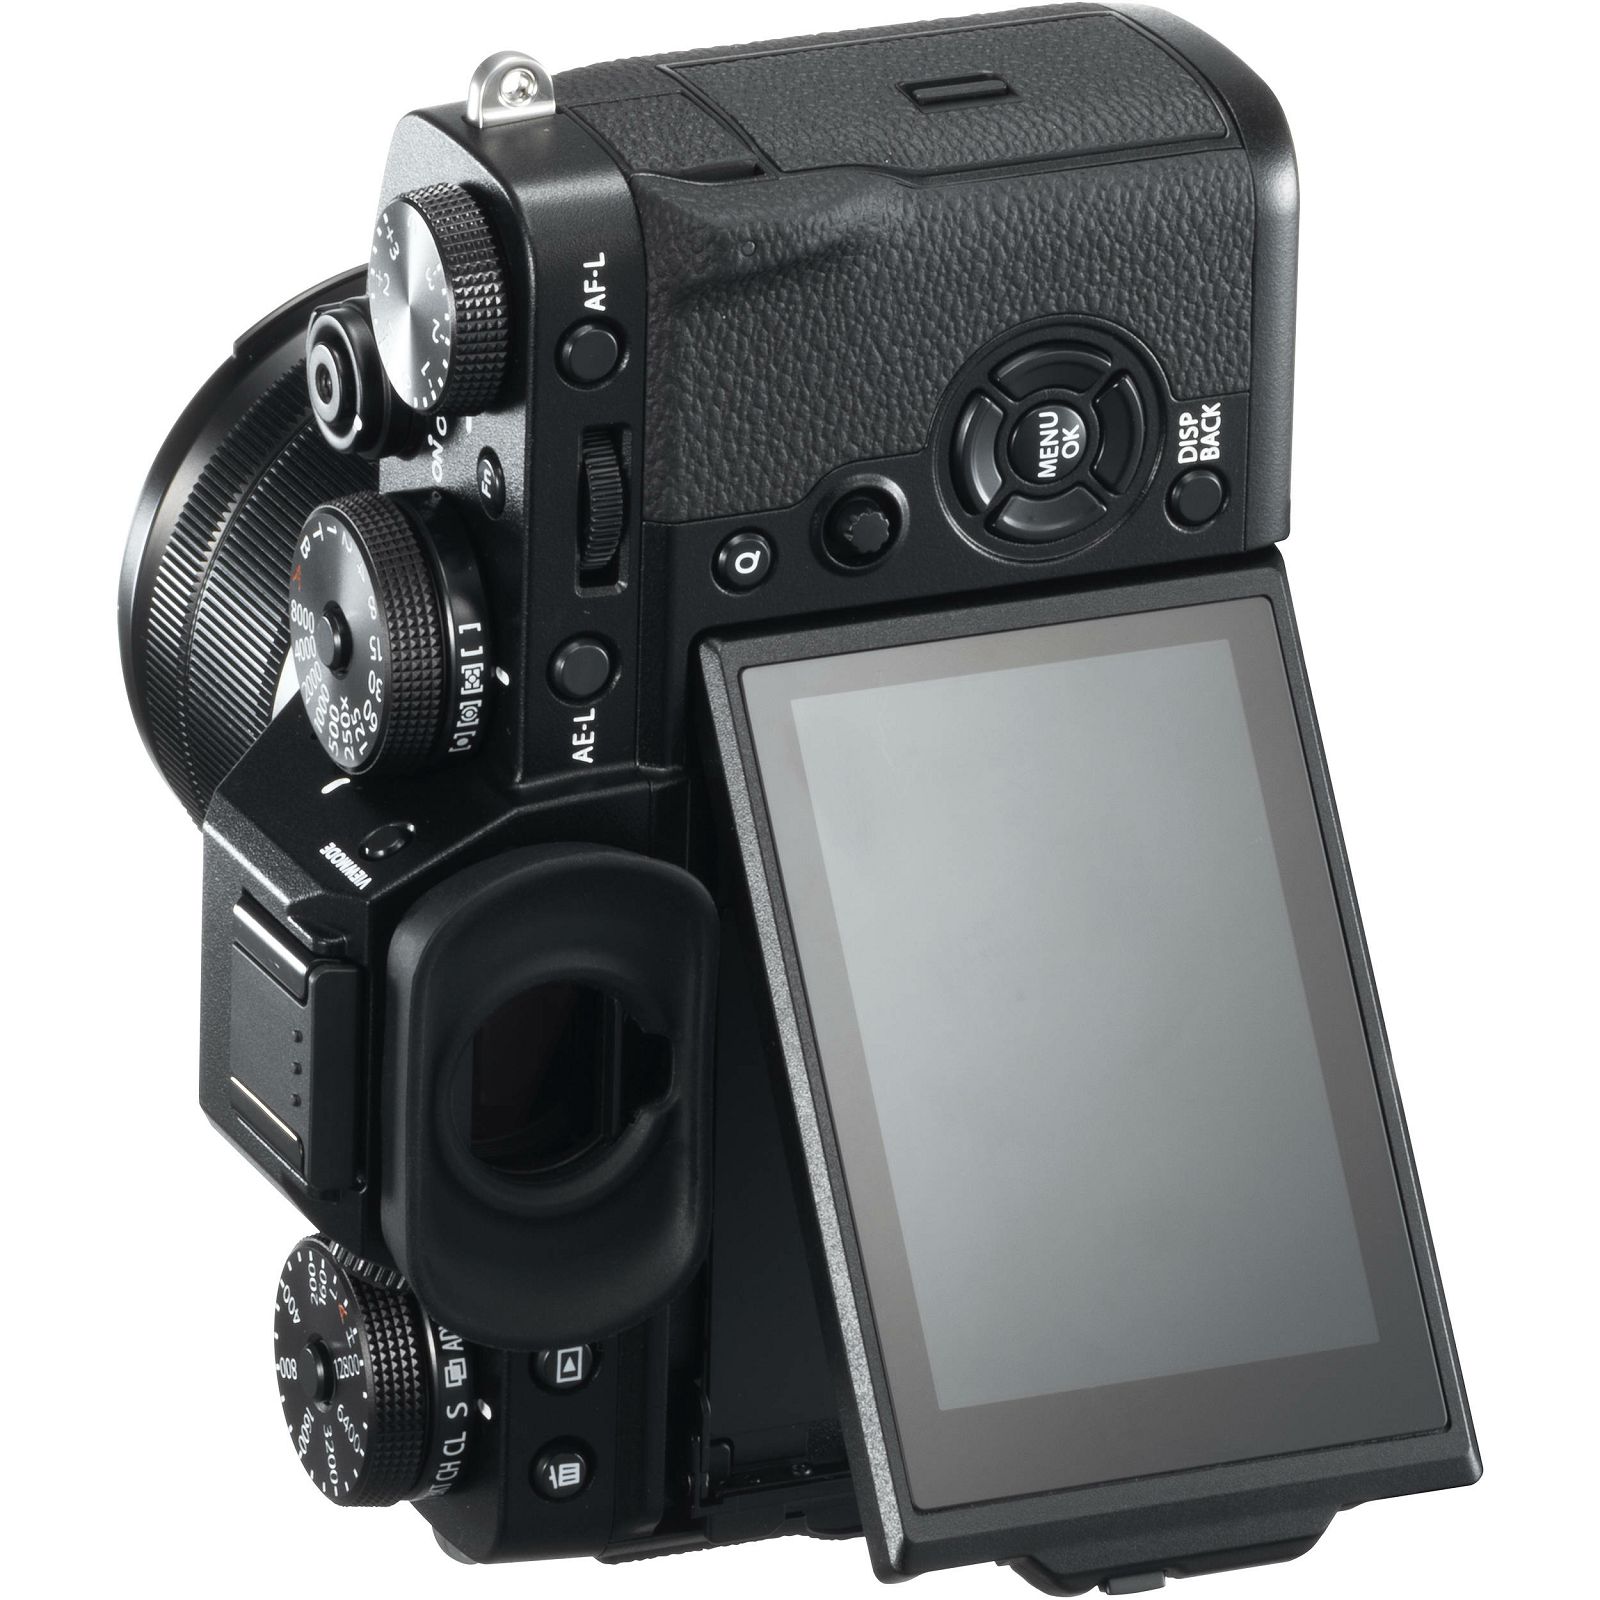 Fujifilm X-T3 Body Black crni Digitalni fotoaparat Mirrorless camera Fuji Finepix XT3 tijelo